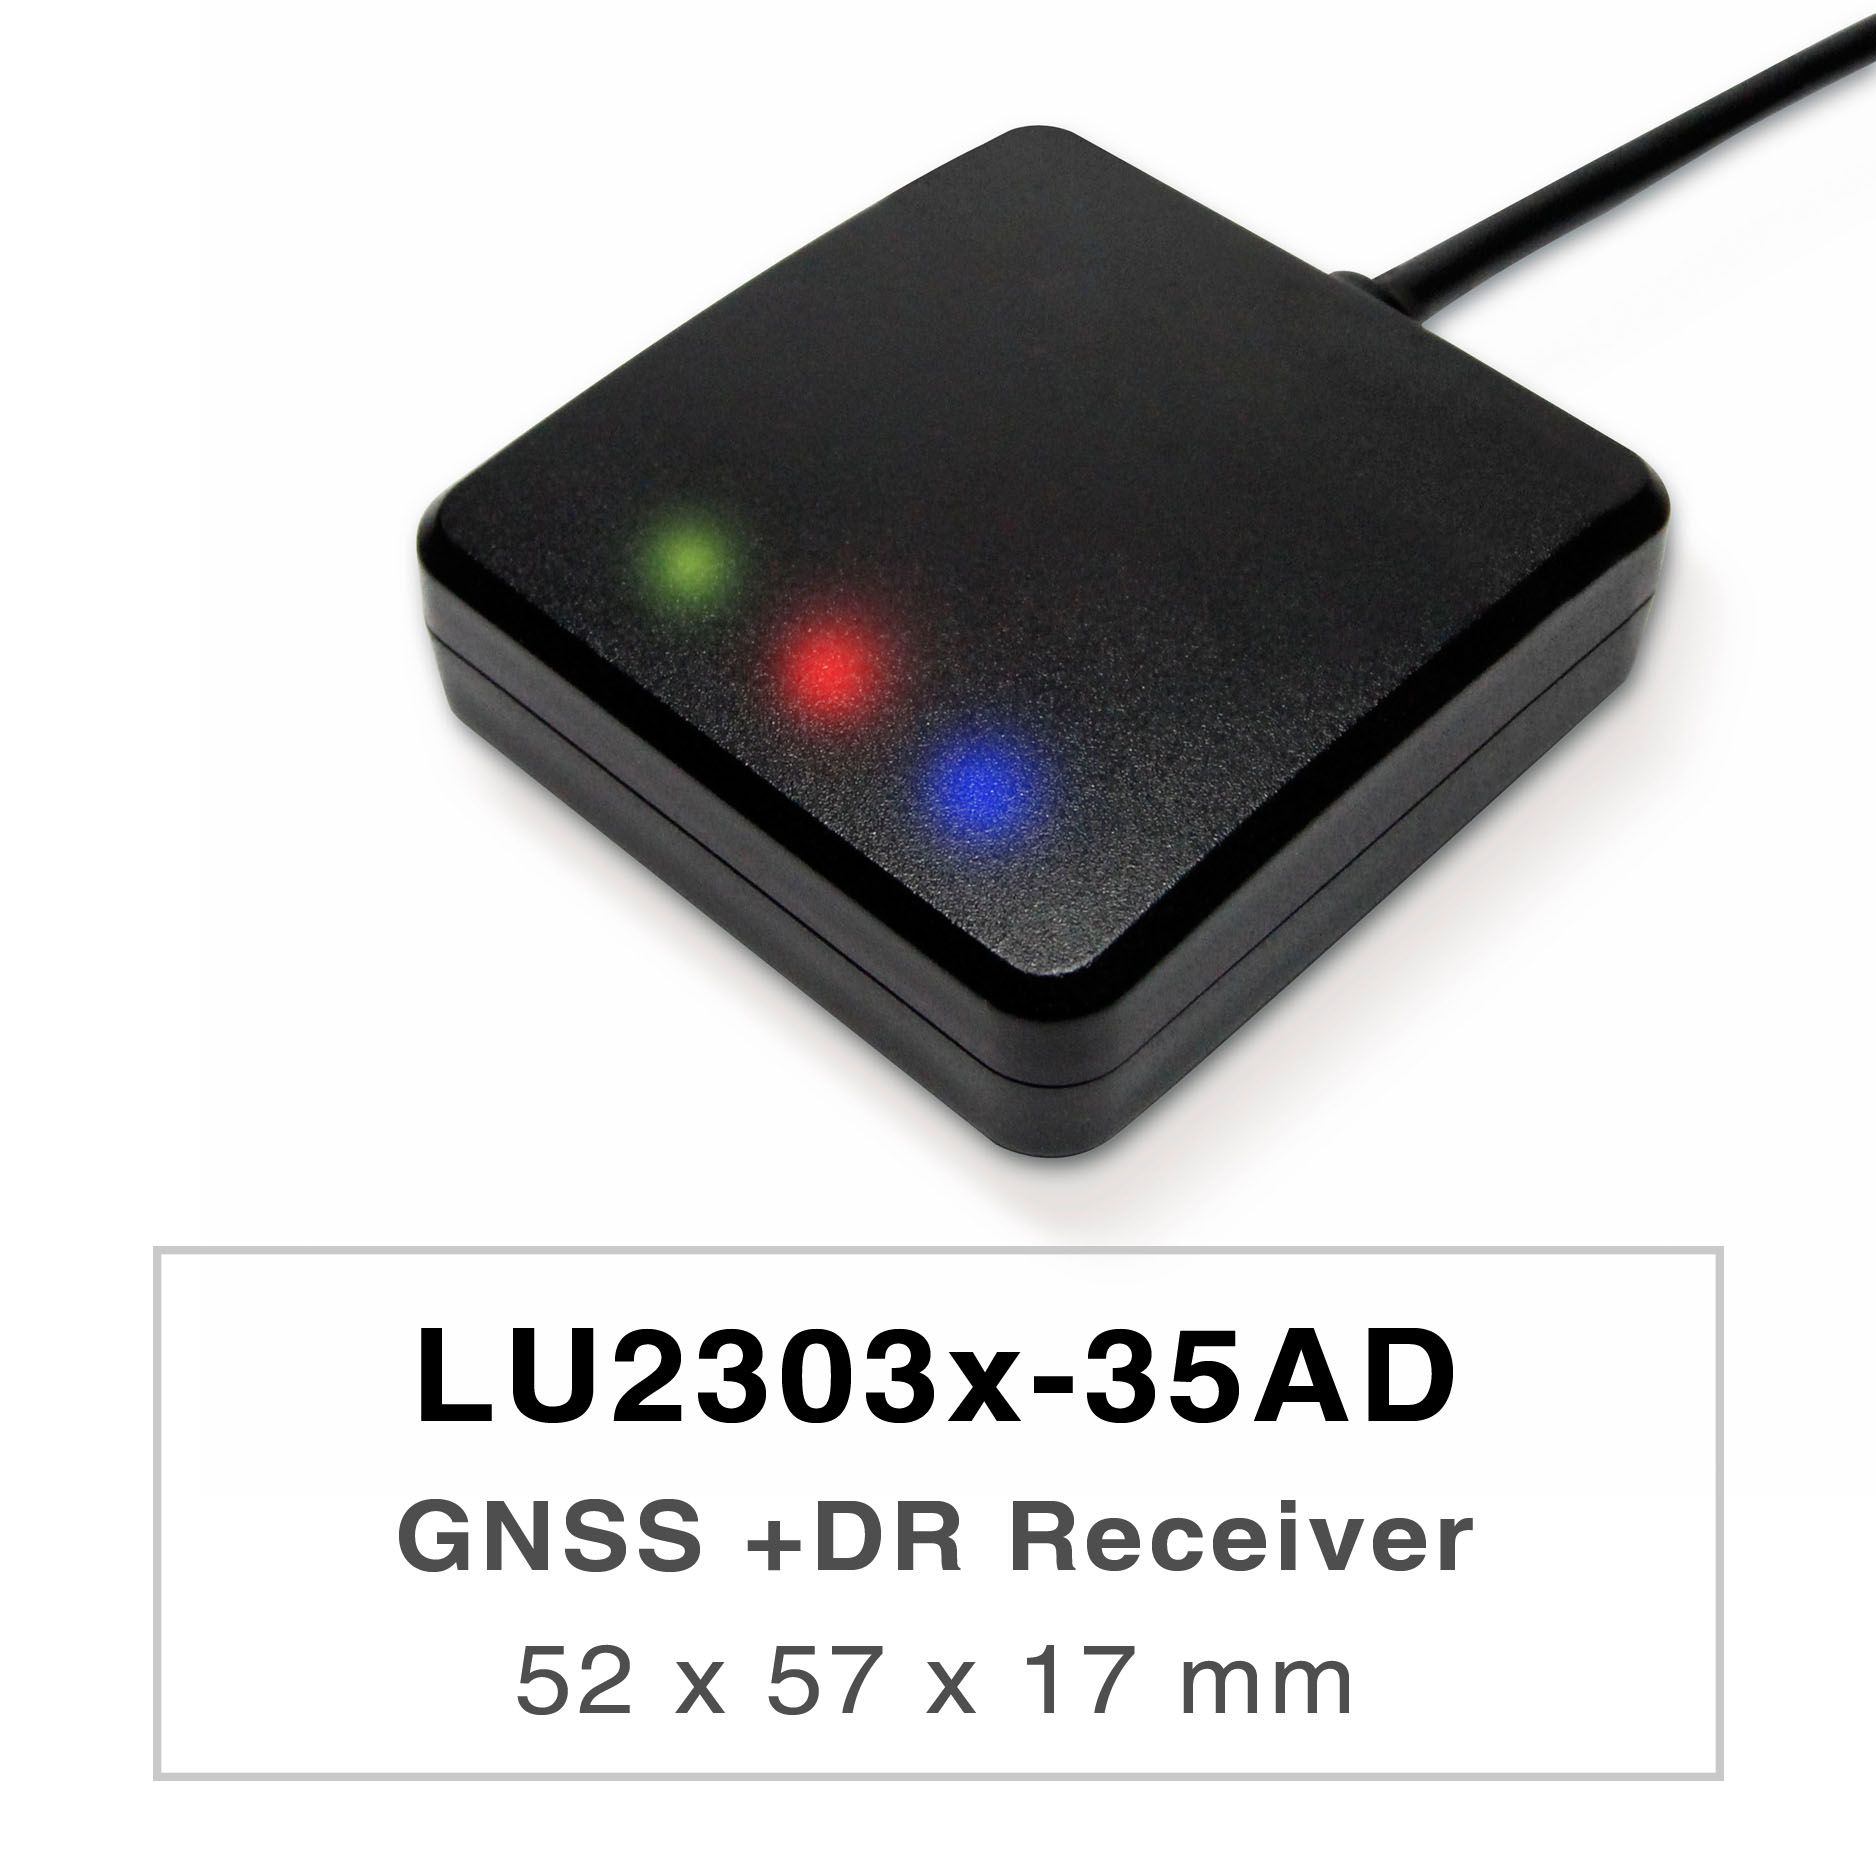 Les produits de la série LU2303x-35AD sont des récepteurs GNSS UDR (Untethered Dead Reckoning) double bande hautes performances (également connus sous le nom de souris GNSS) capables de suivre tous les systèmes de navigation civile mondiaux (GPS, GLONASS, BDS, GALILEO, QZSS). La souris GNSS acquerra les signaux L1 et L5 à la fois tout en offrant une meilleure précision de position.